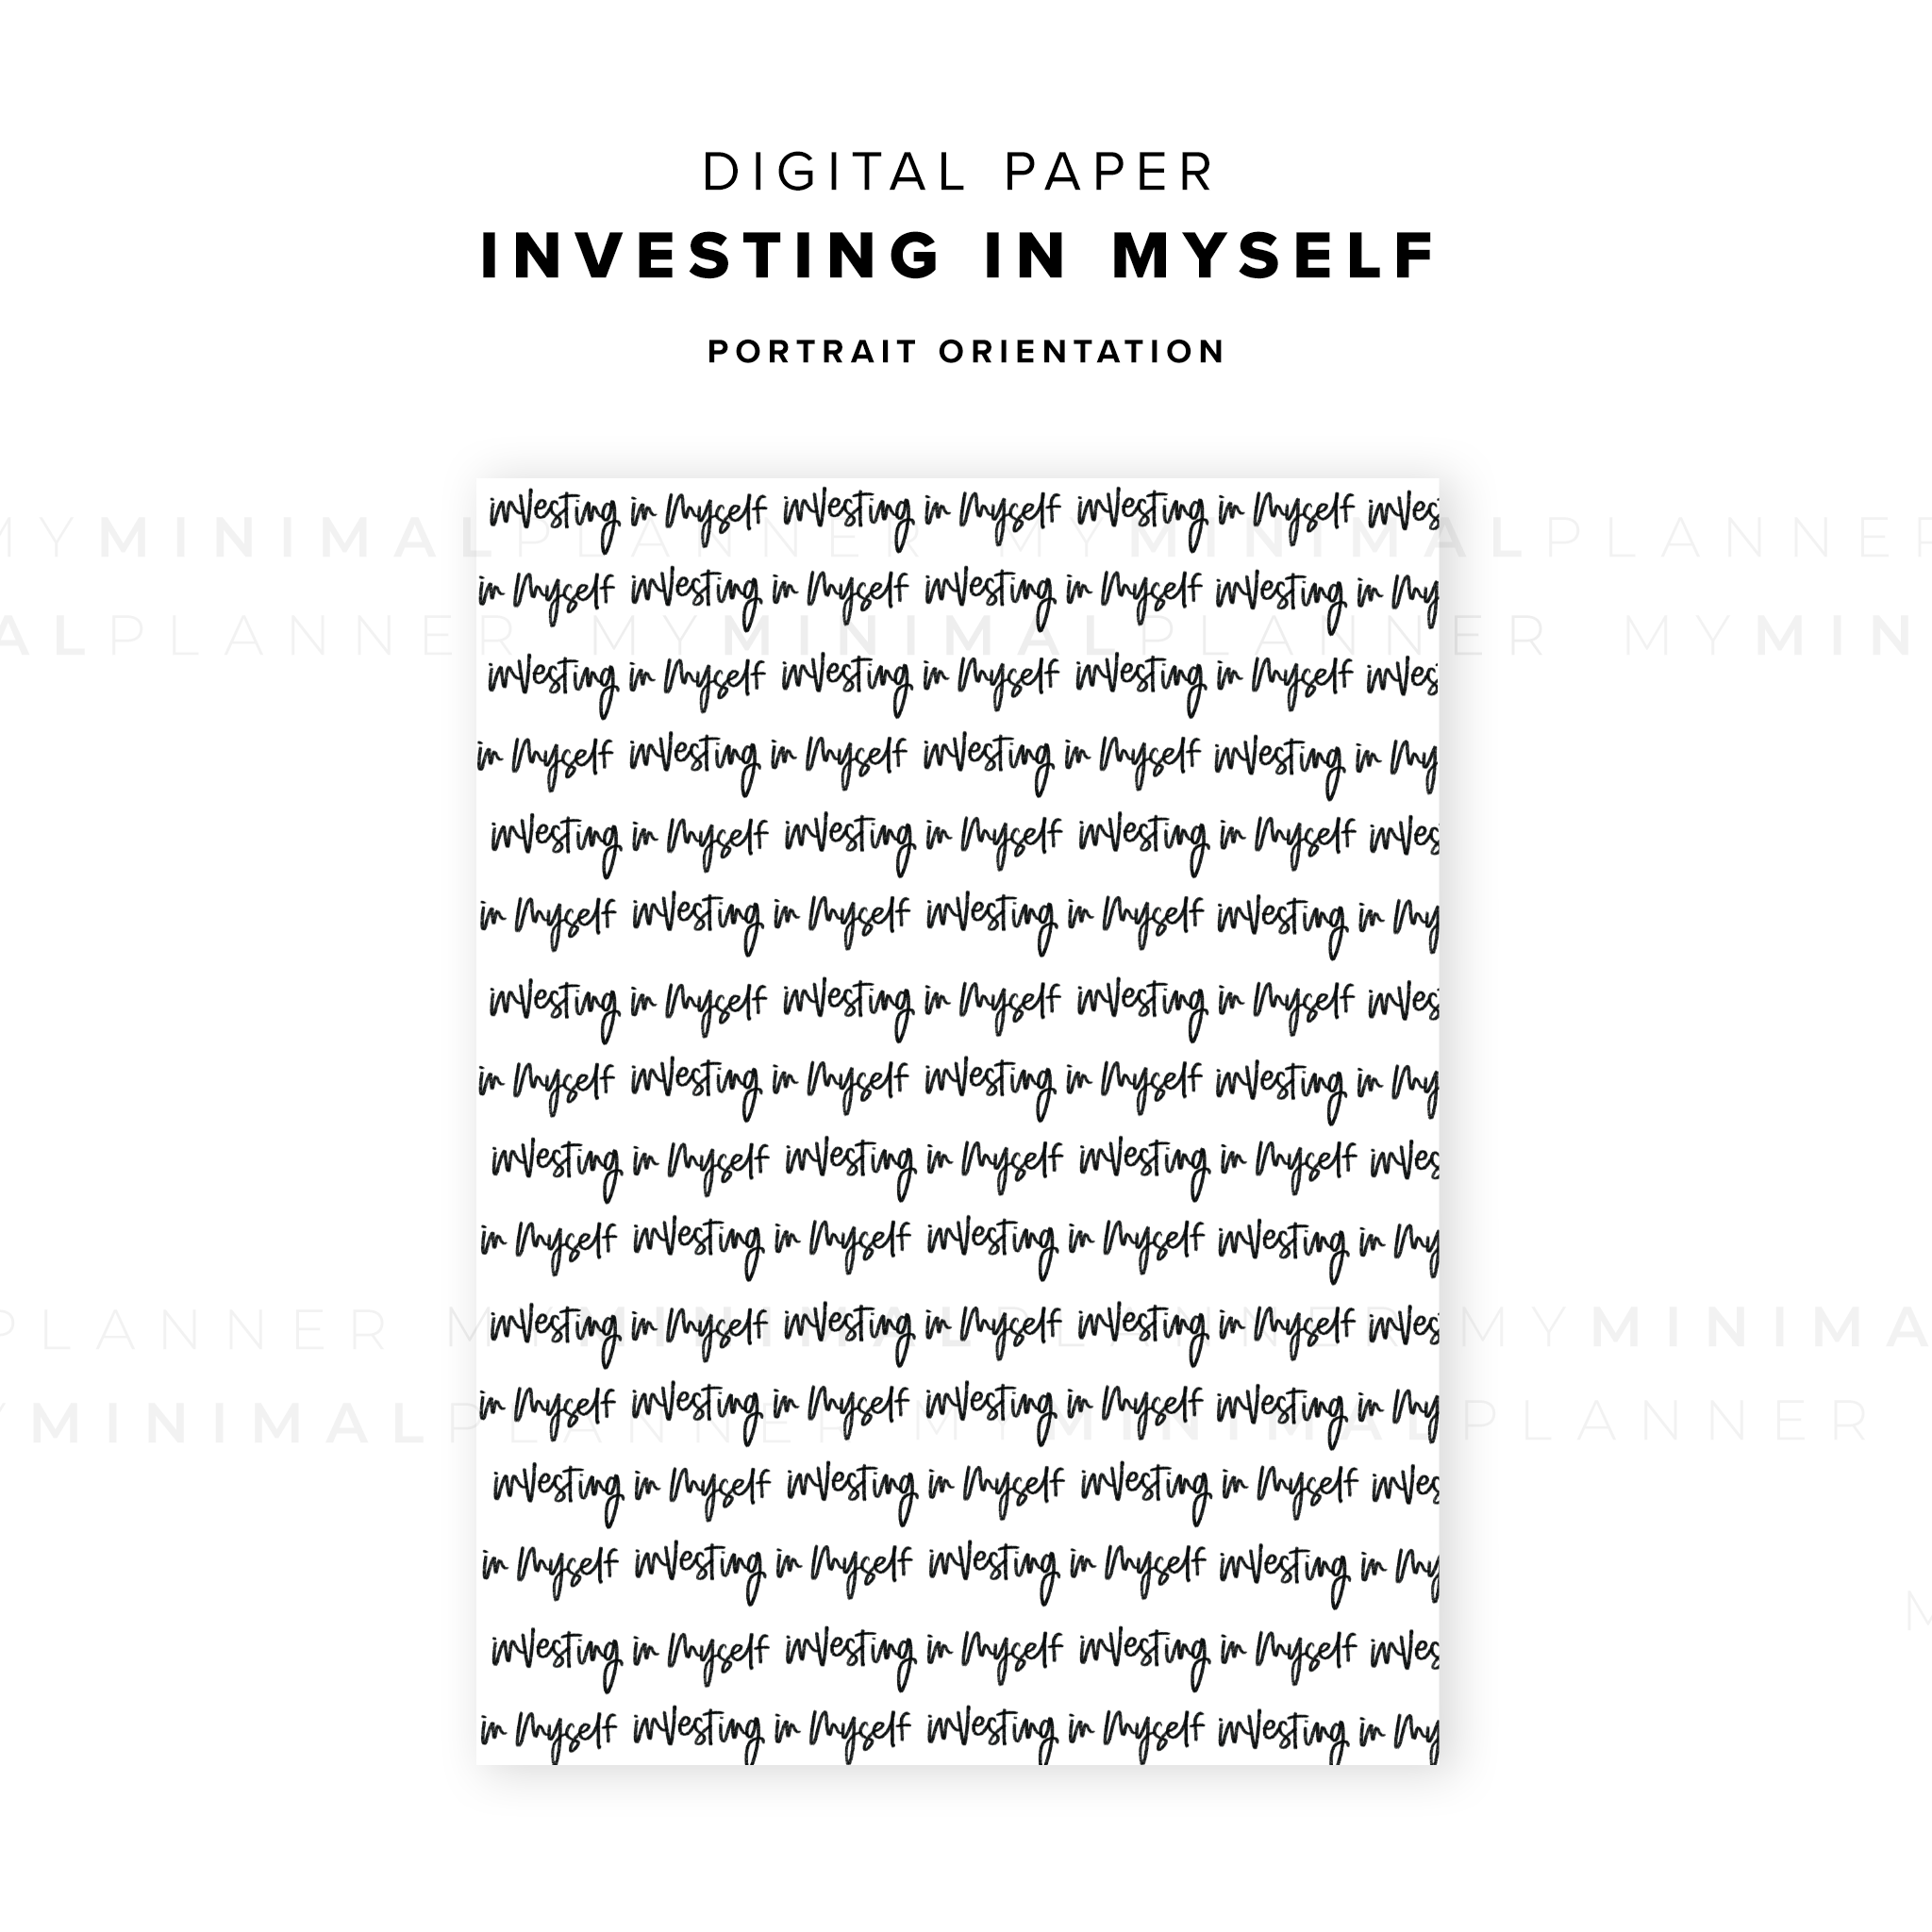 DP04 - Investing in Myself - Digital Paper